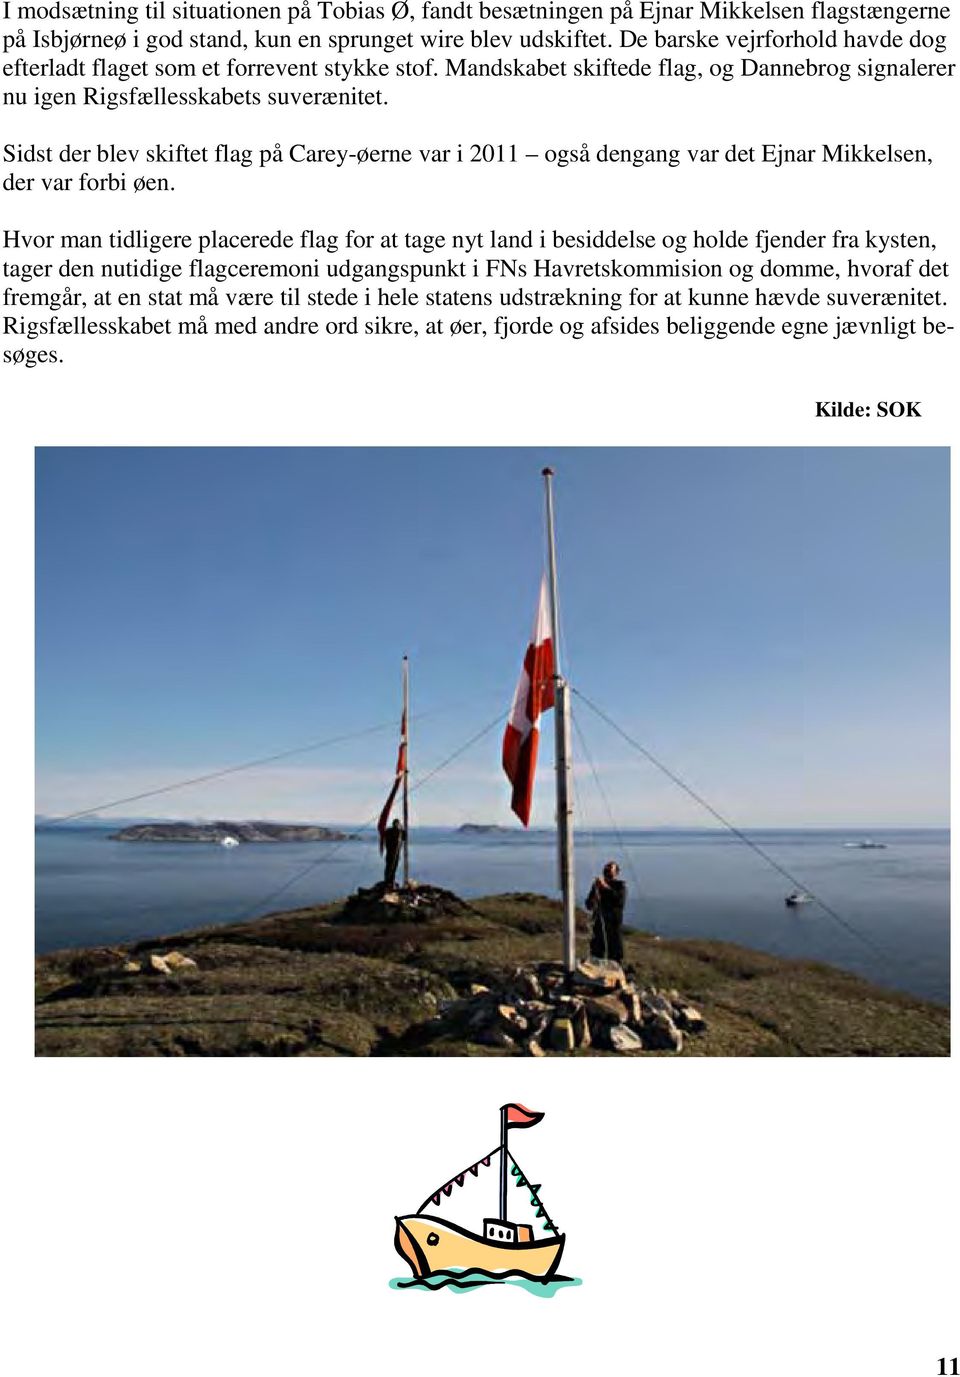 Sidst der blev skiftet flag på Carey-øerne var i 2011 også dengang var det Ejnar Mikkelsen, der var forbi øen.